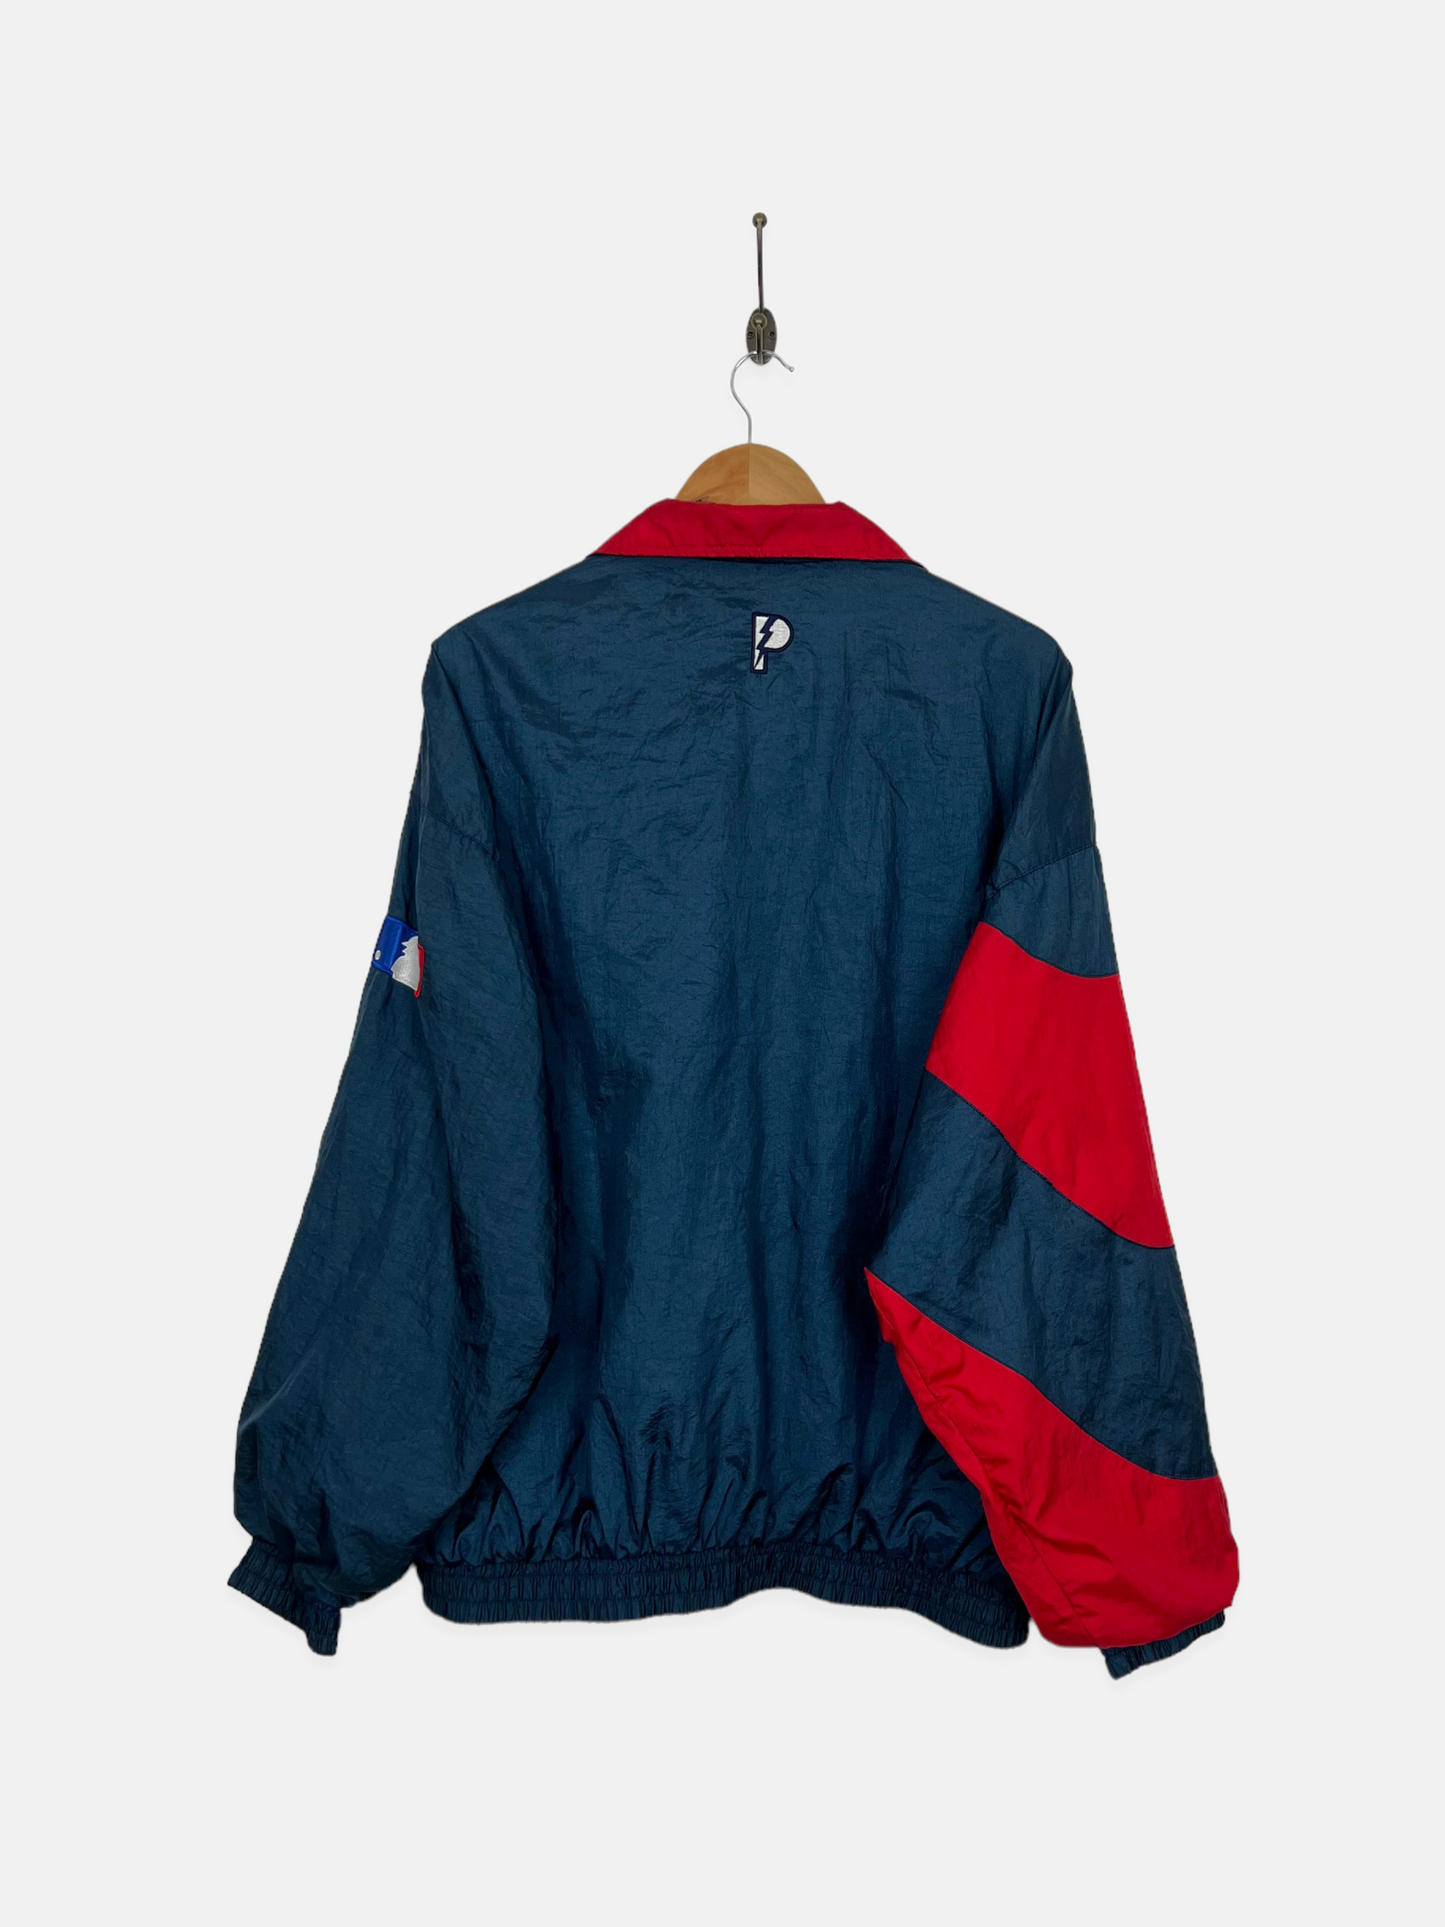 90's Cleveland Indians MLB Embroidered Vintage Jacket Size M-L